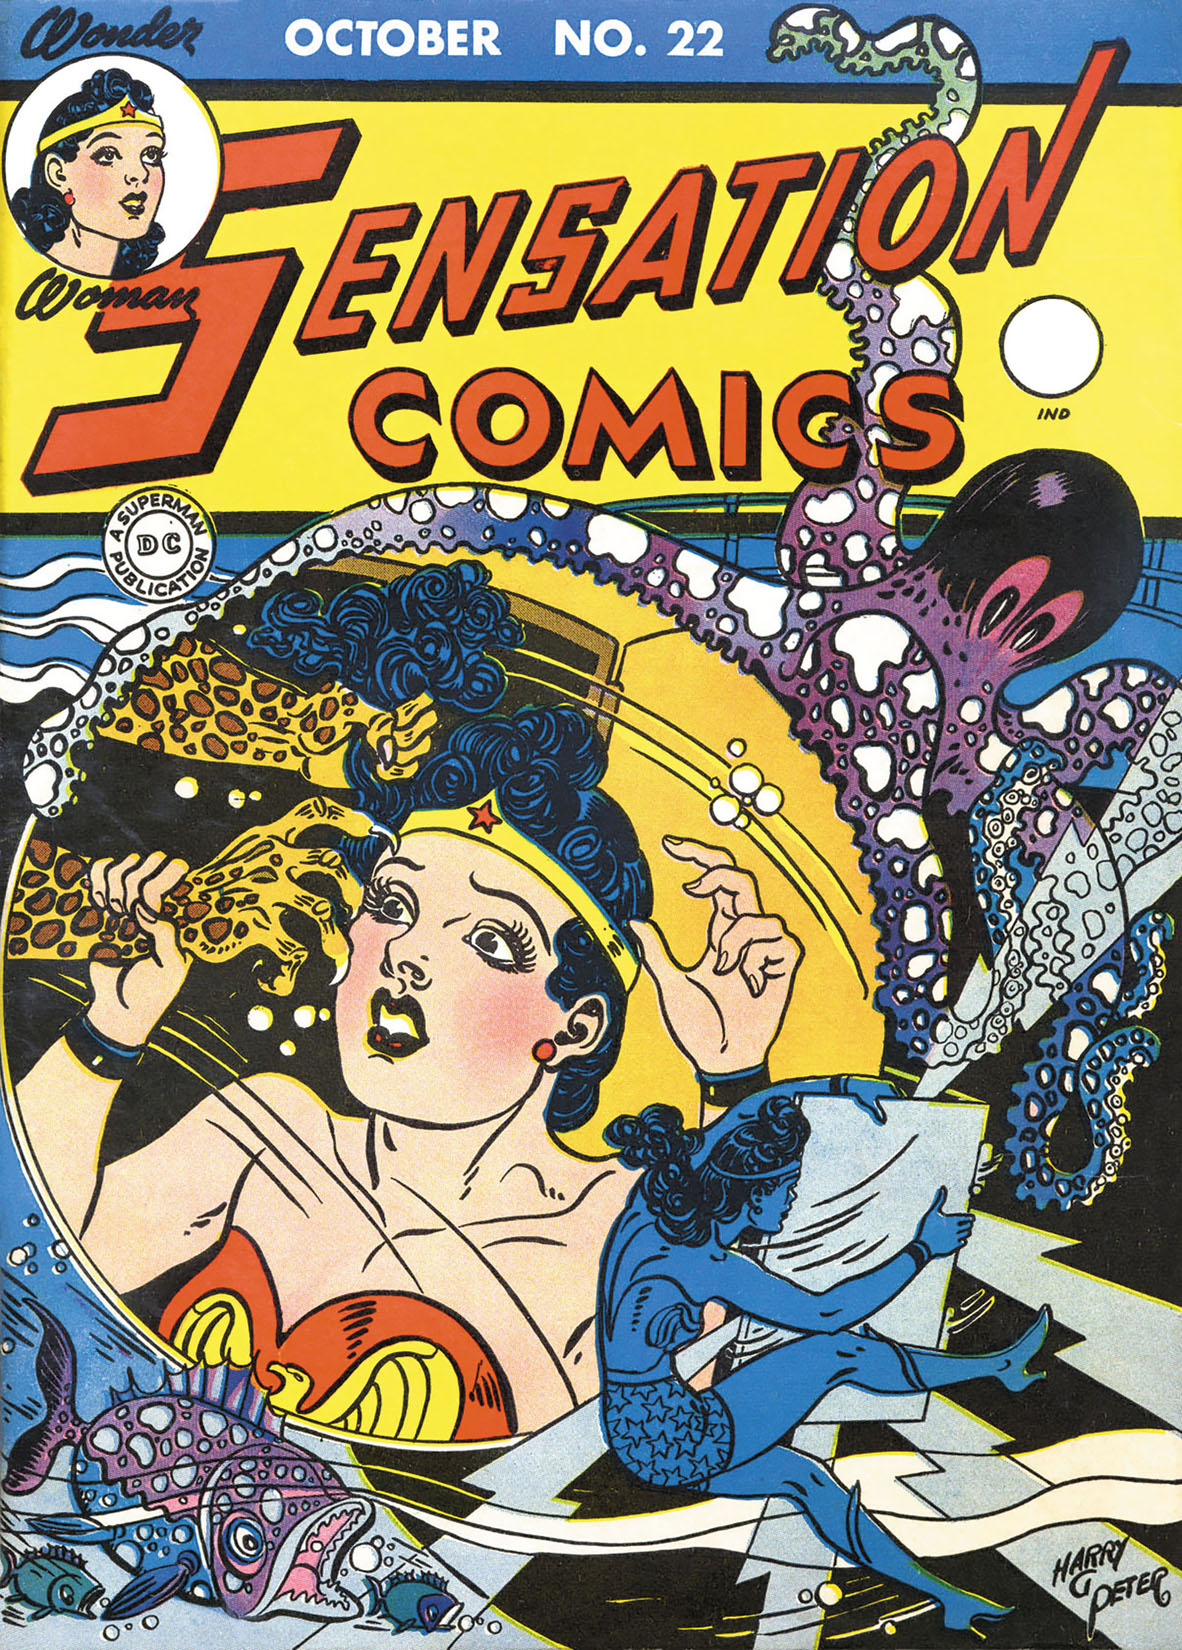 Sensation Comics #22 preview images